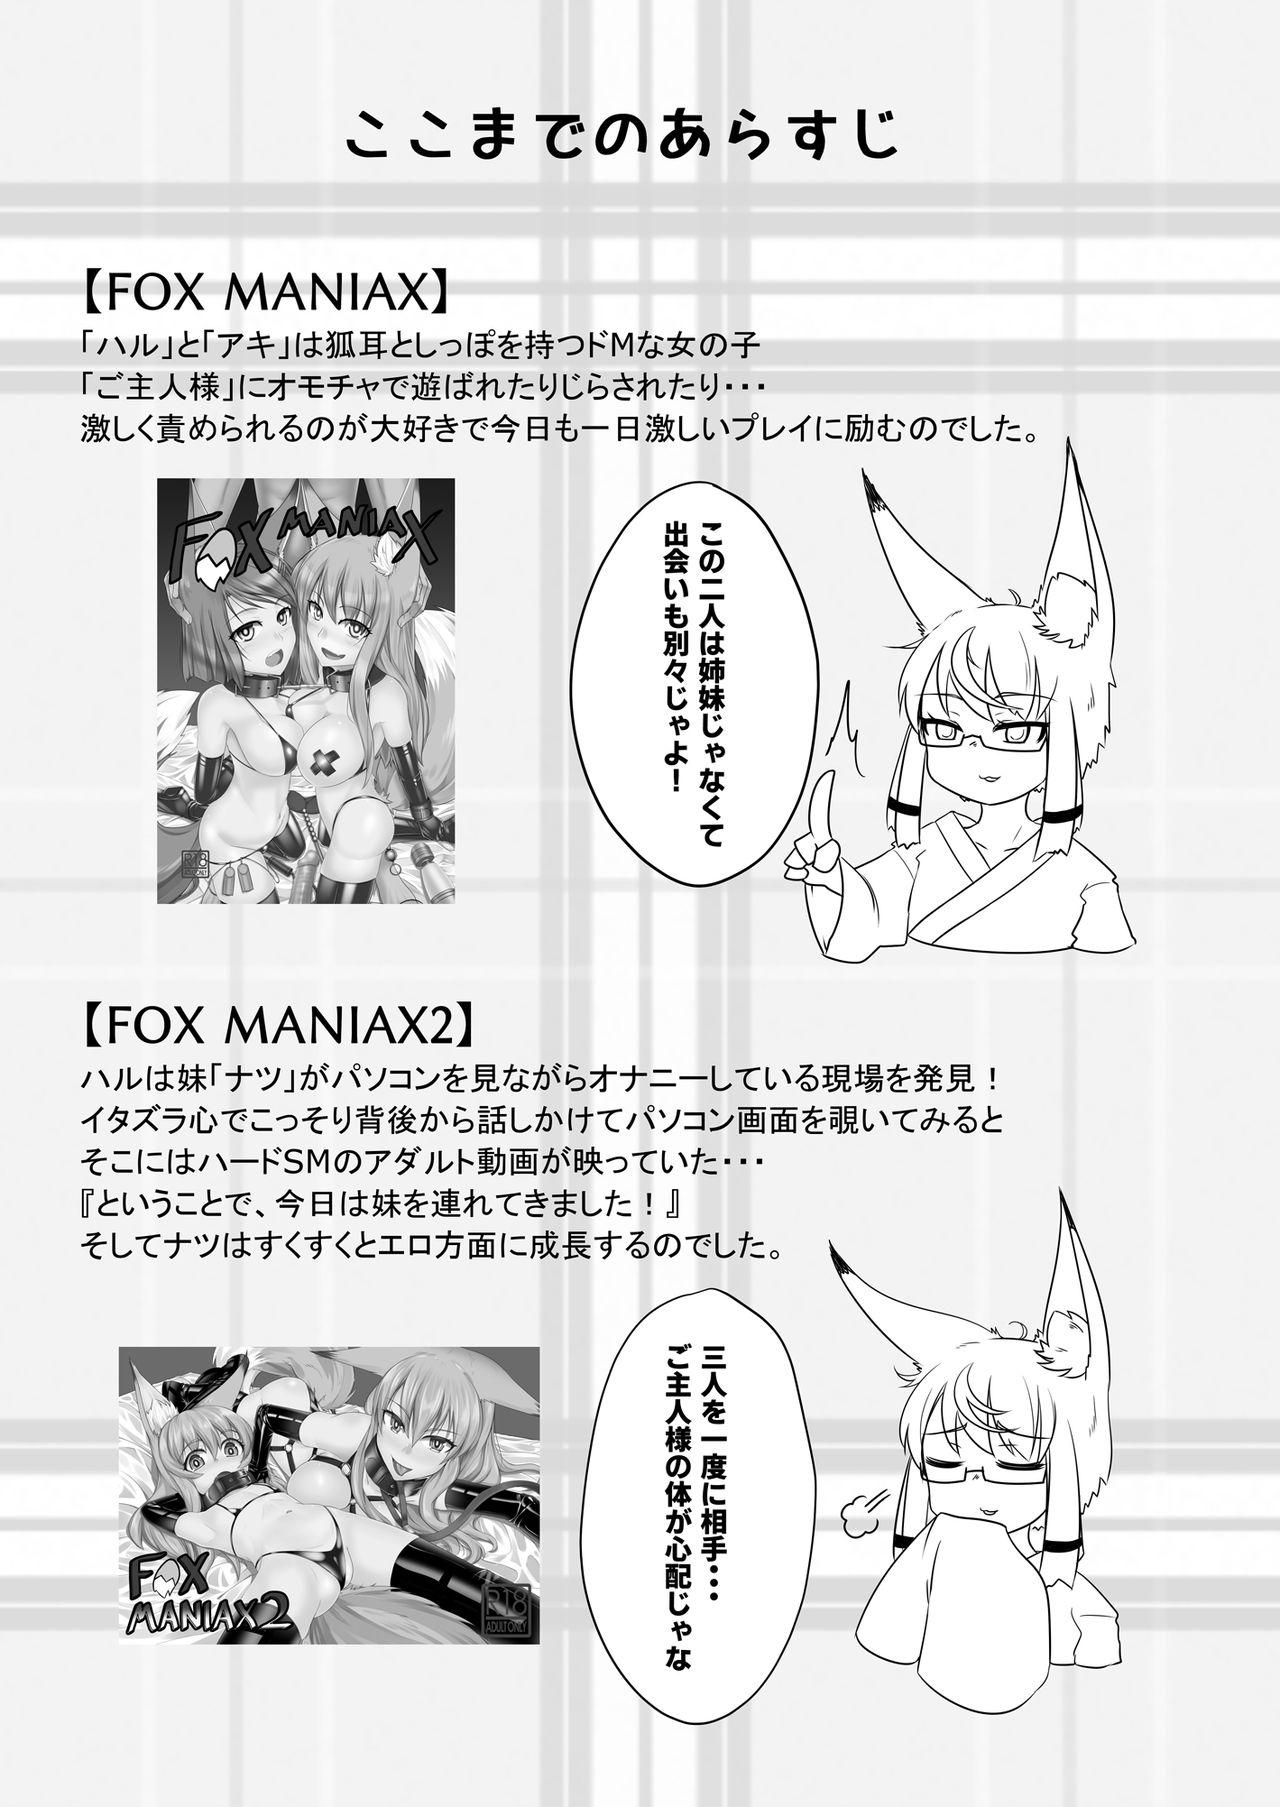 FOX MANIAX3 1